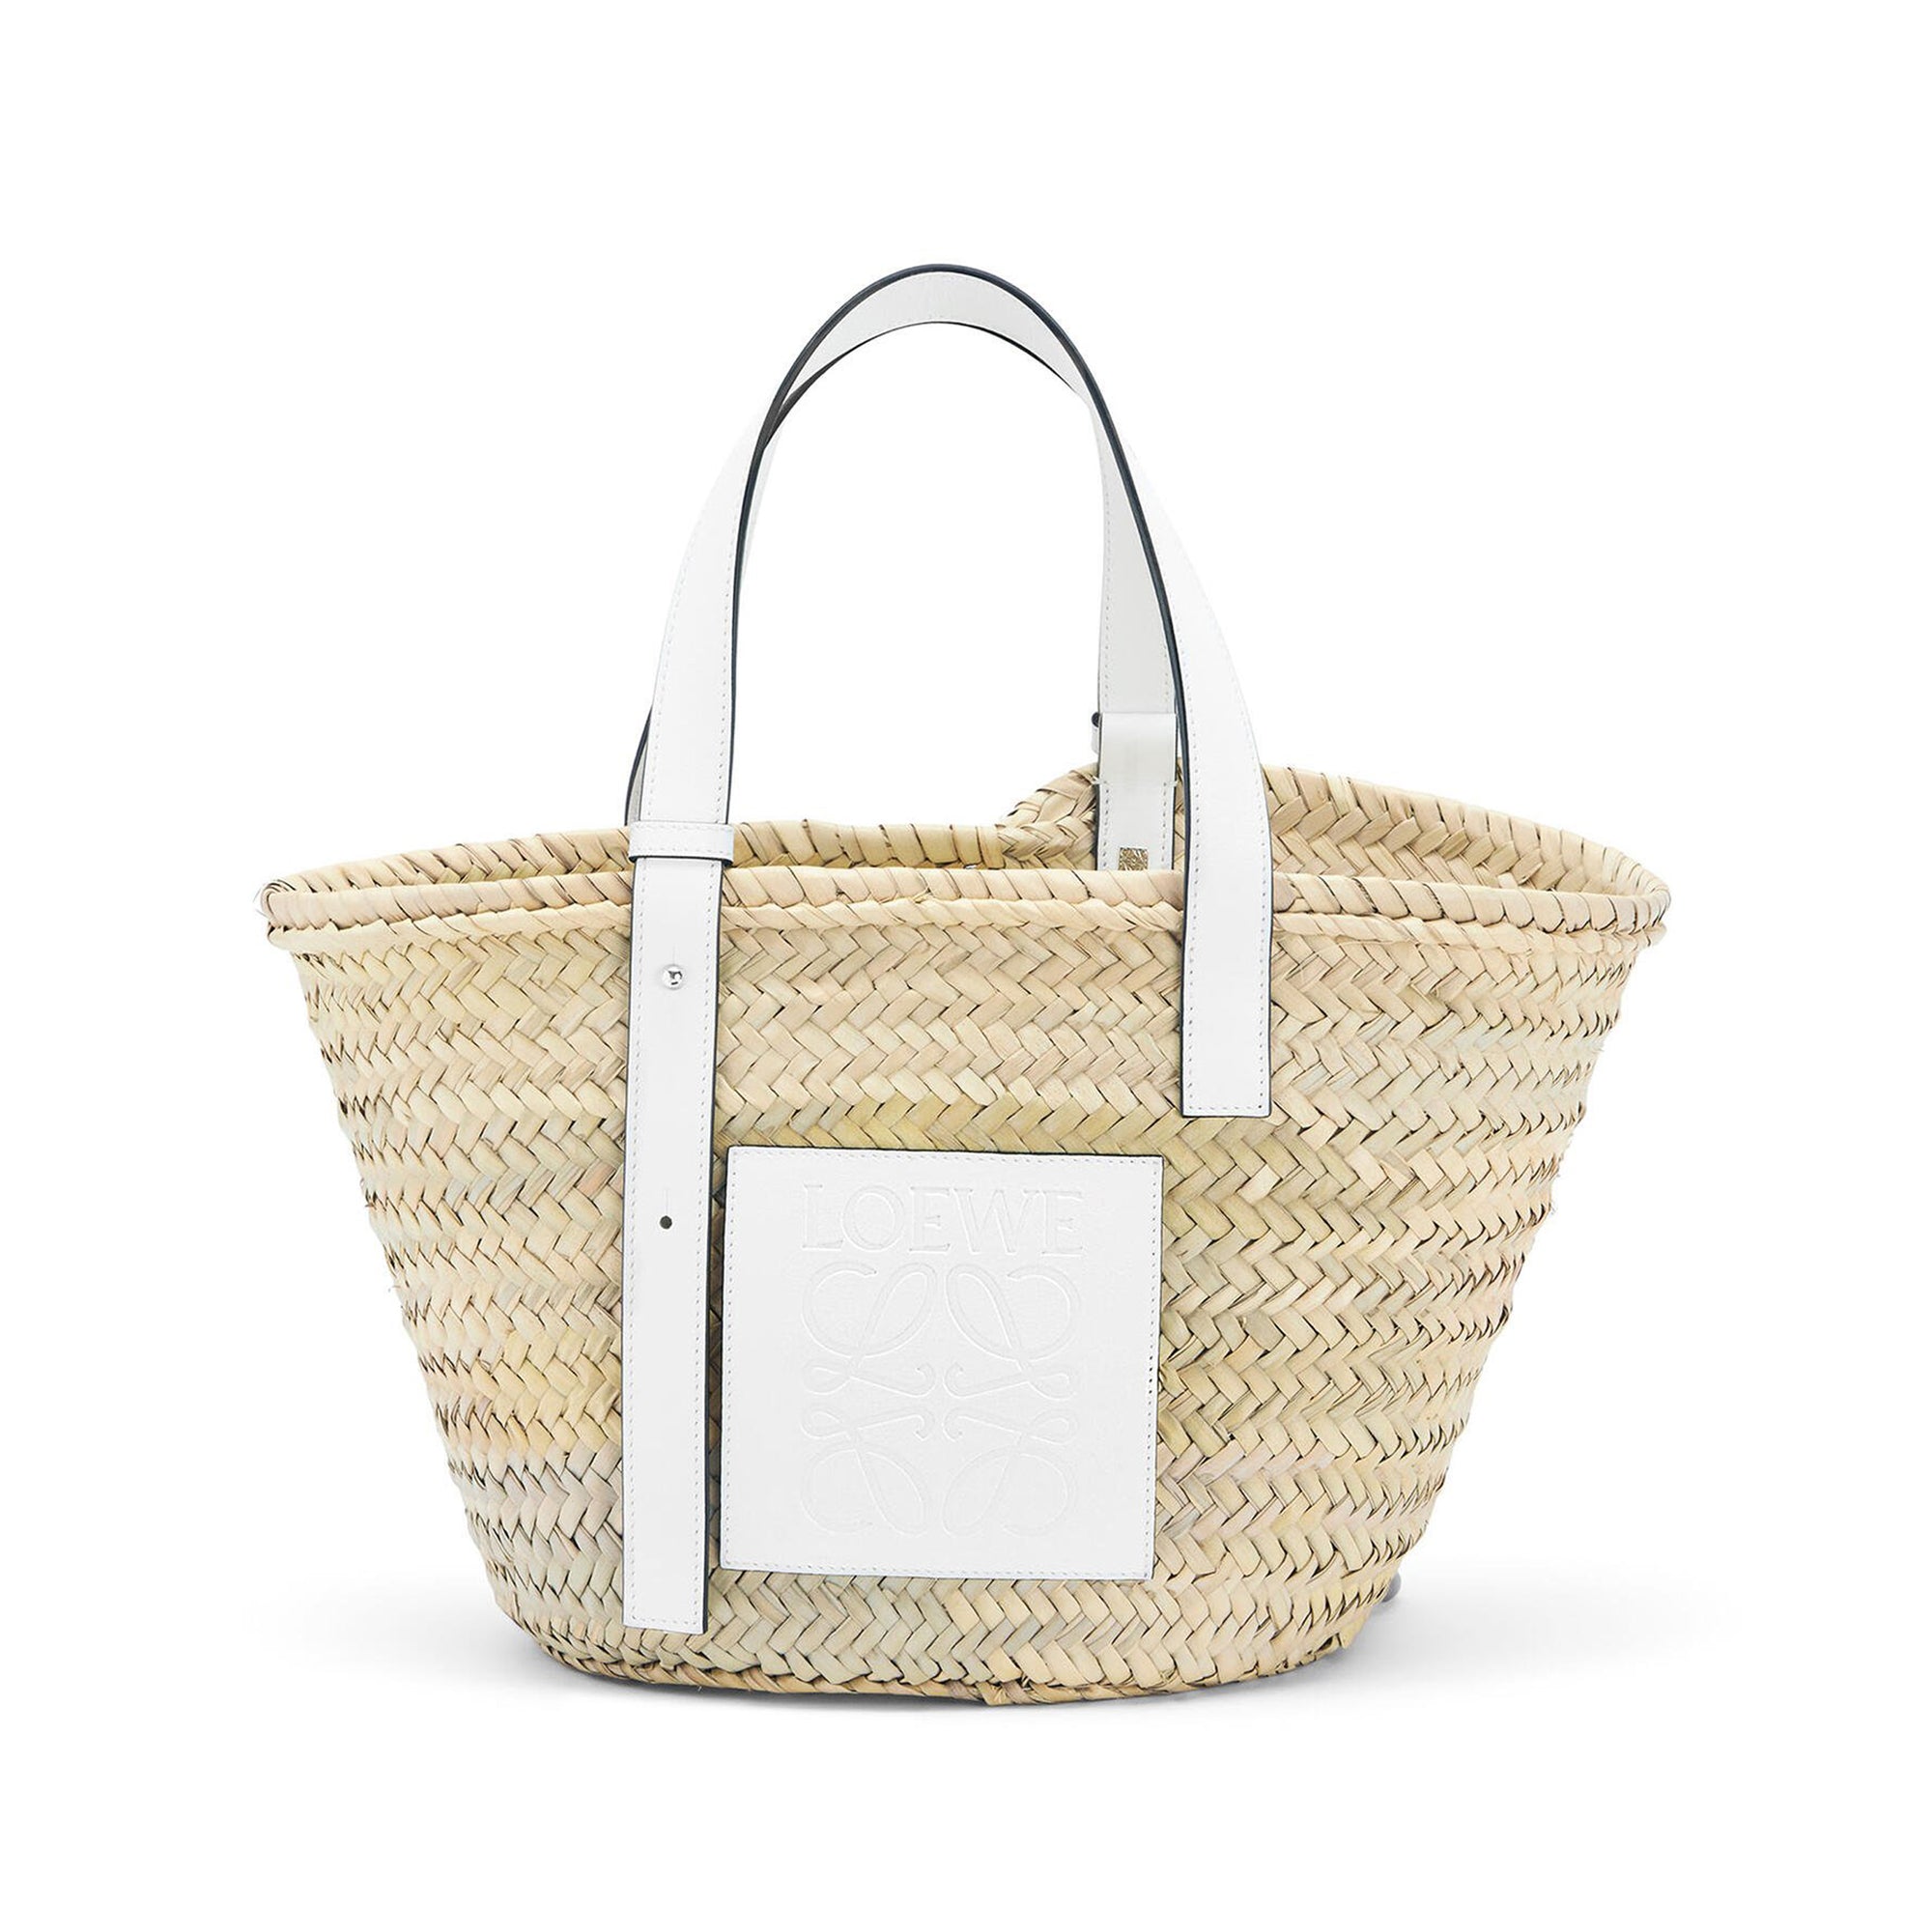 Loewe - Women’s Basket Bag - (Natural/White) view 2